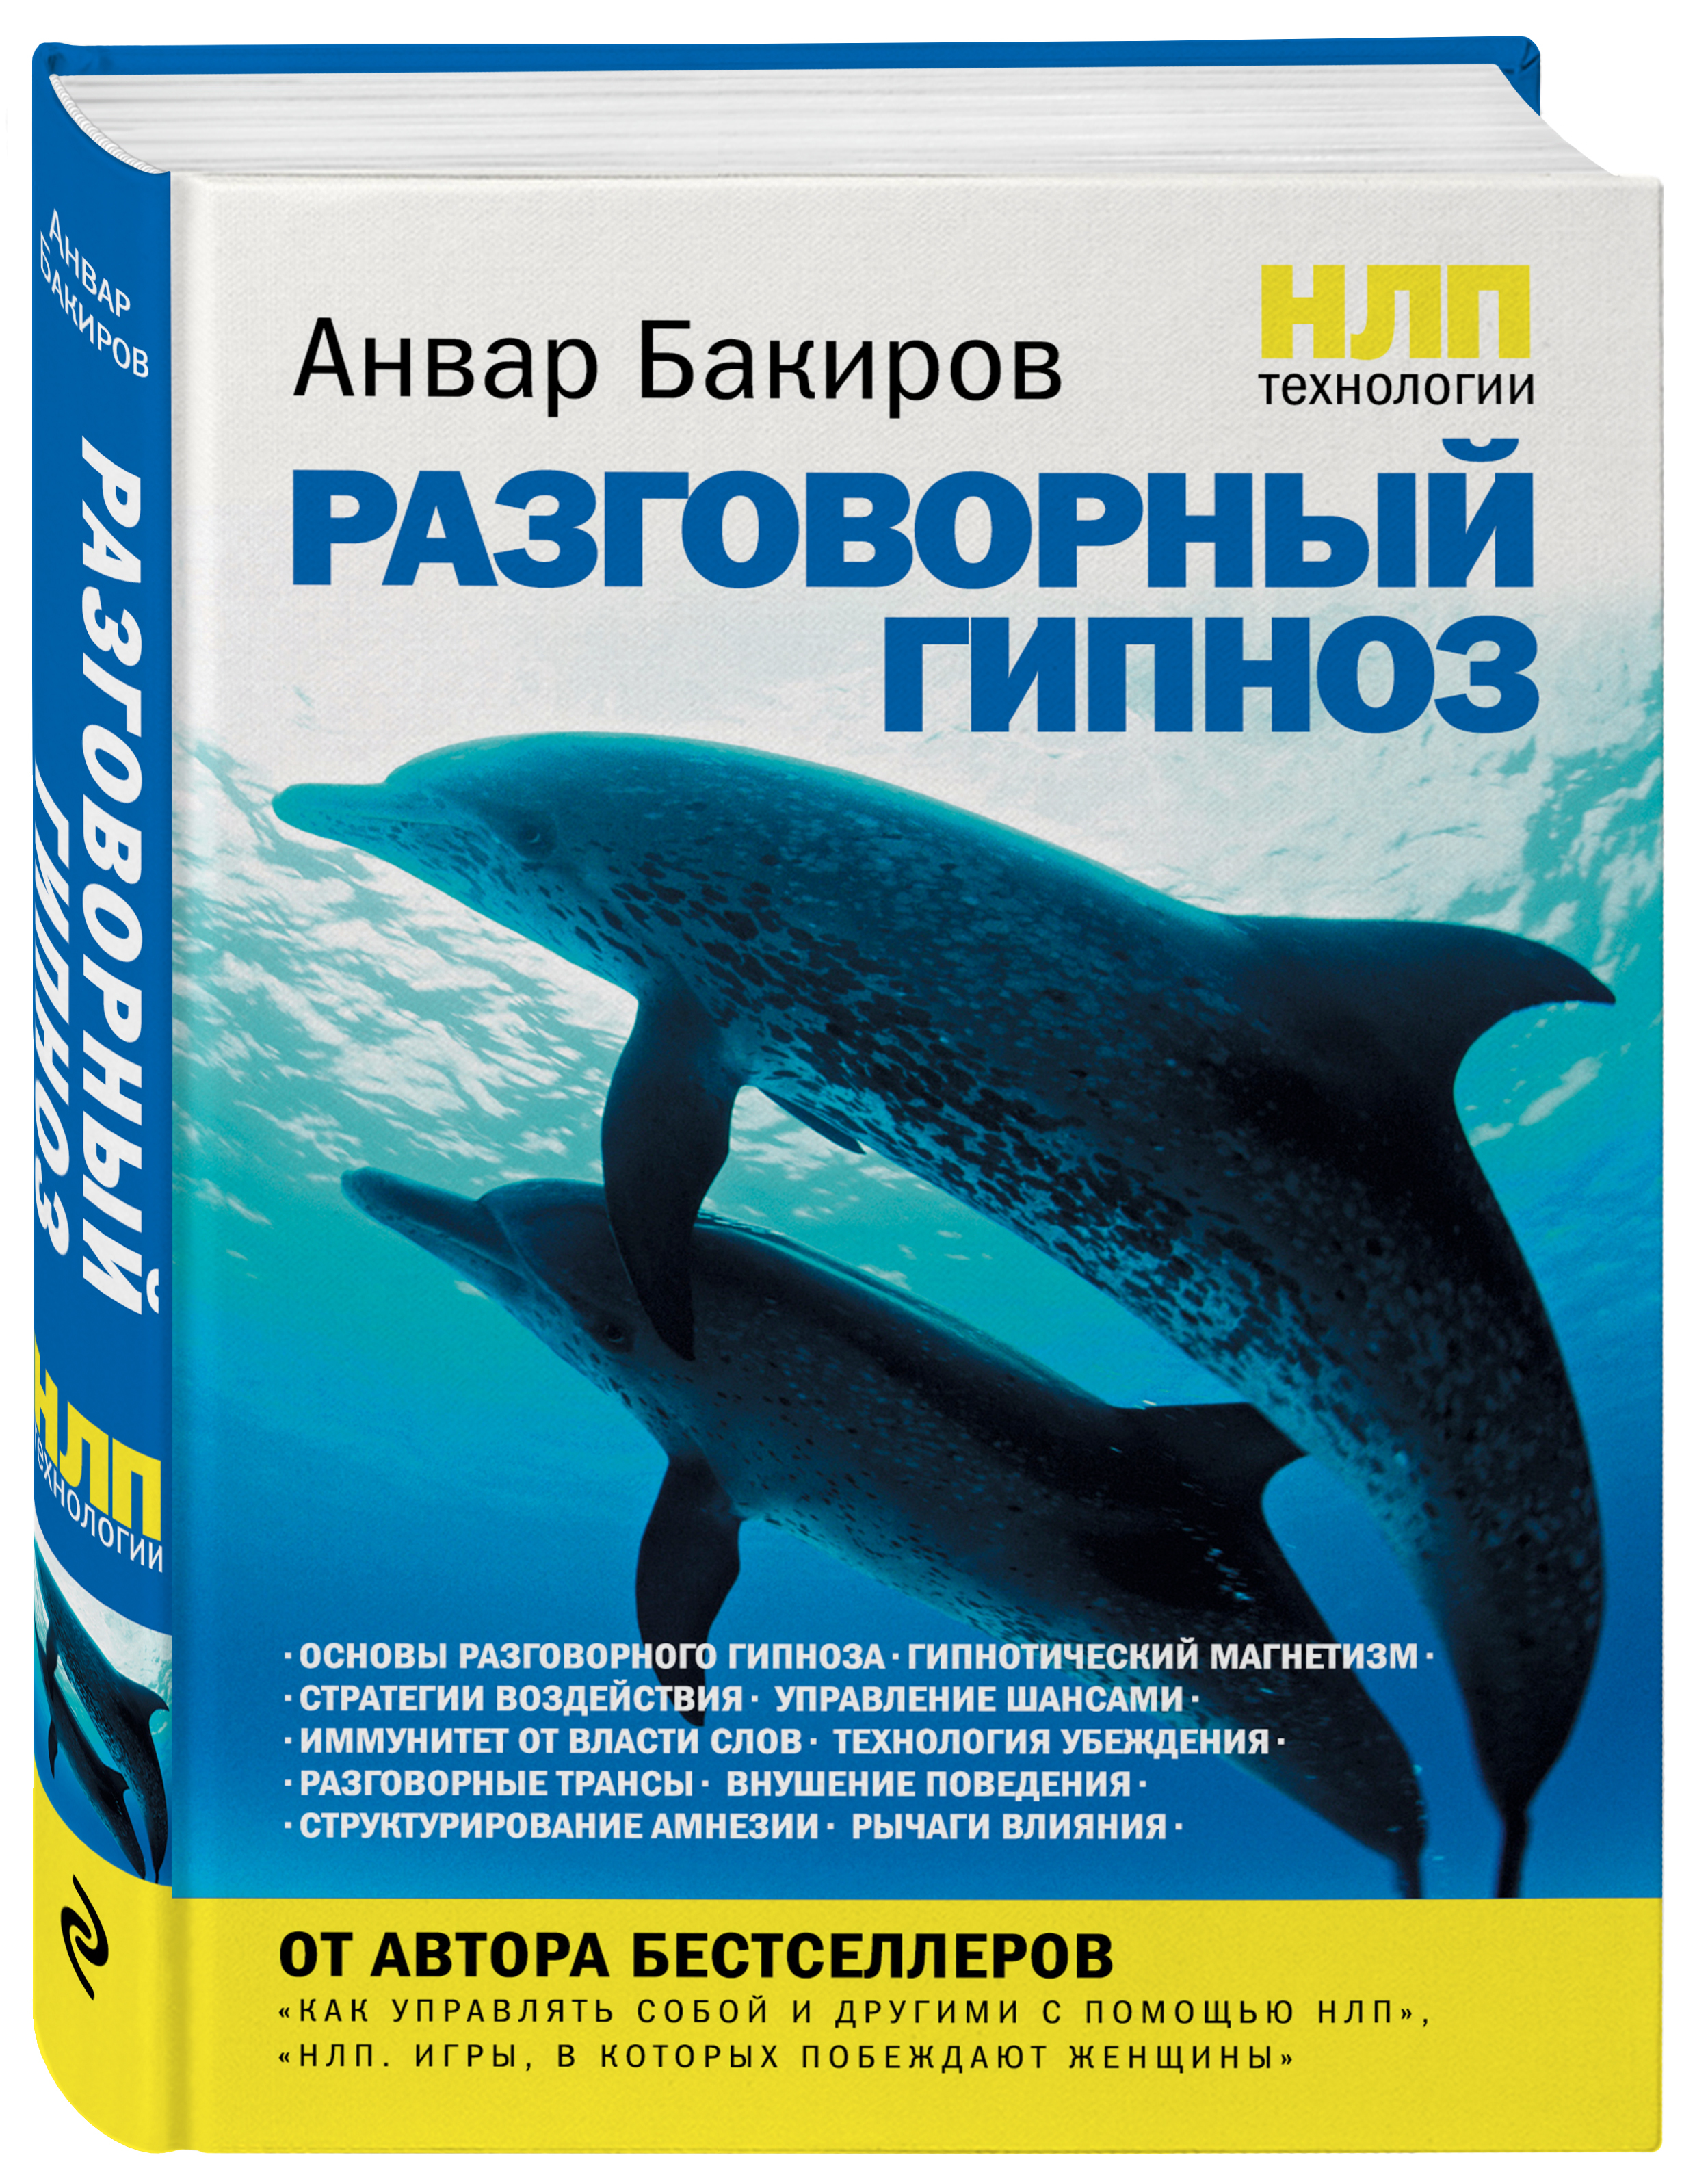 Обложка книги Бакиров Анвар Камилевич: НЛП-технологии: Разговорный гипноз